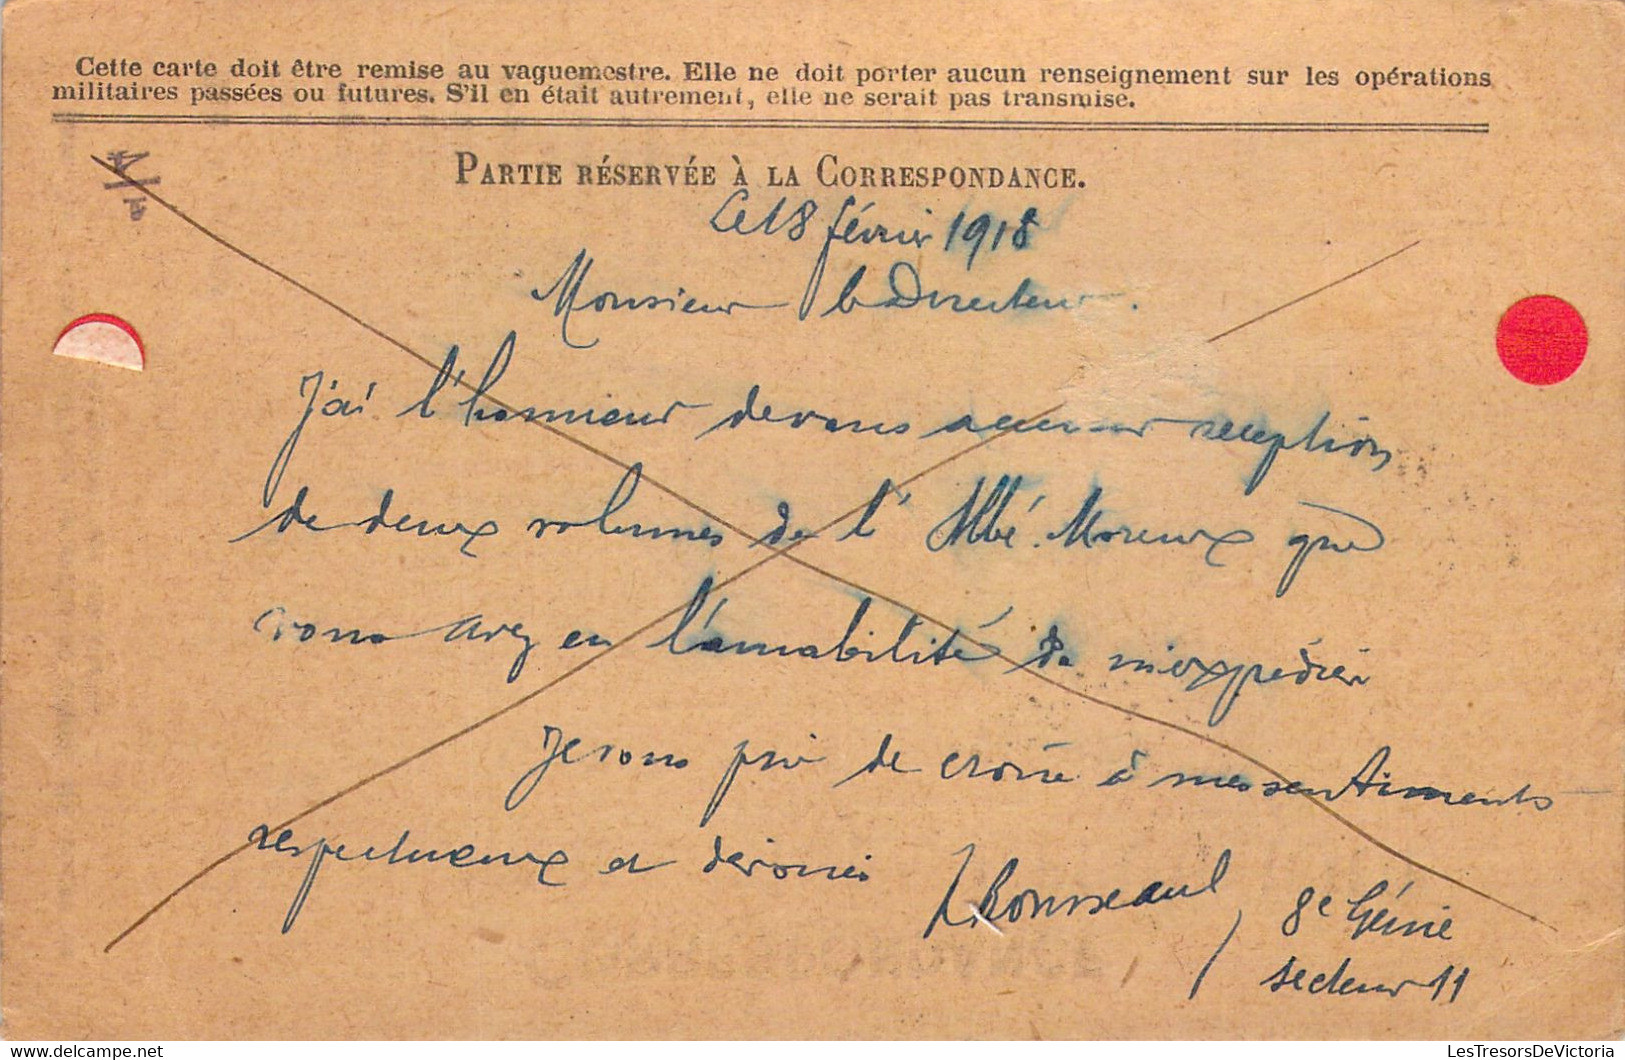 France Correspondance Des Armées De La République  - Carte En Franchise - Cachet Trésor Et Postes 19 Février 1918 - Briefe U. Dokumente